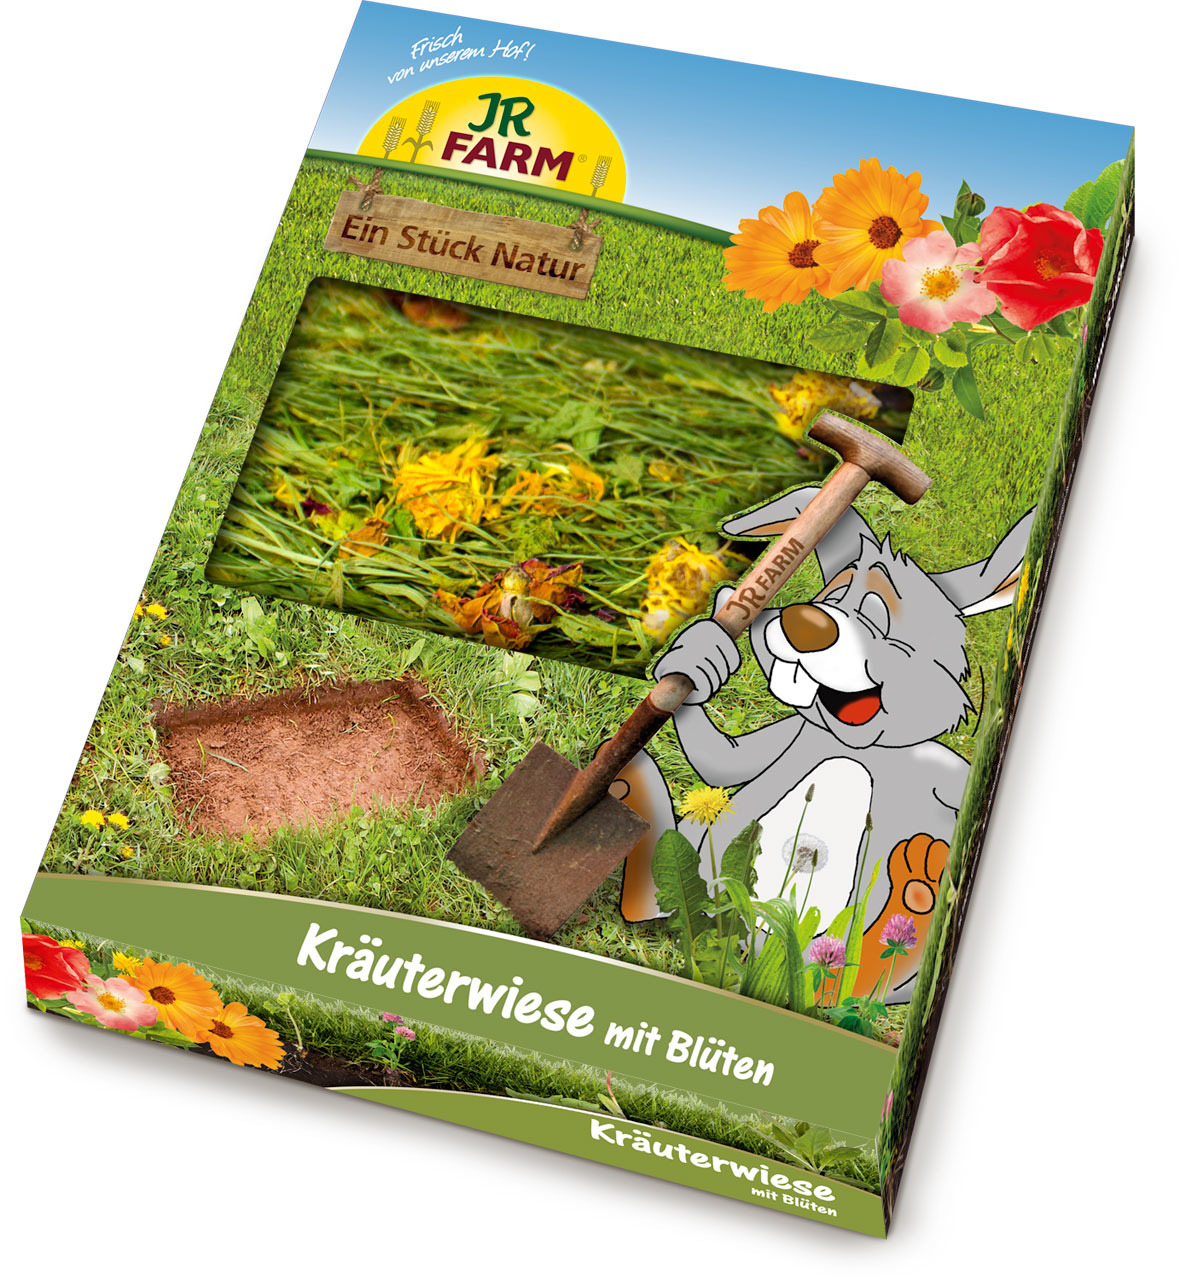 Sparpaket 2 x 750 g JR Farm Ein Stück Natur Kräuterwiese mit Blüten Nager Snack